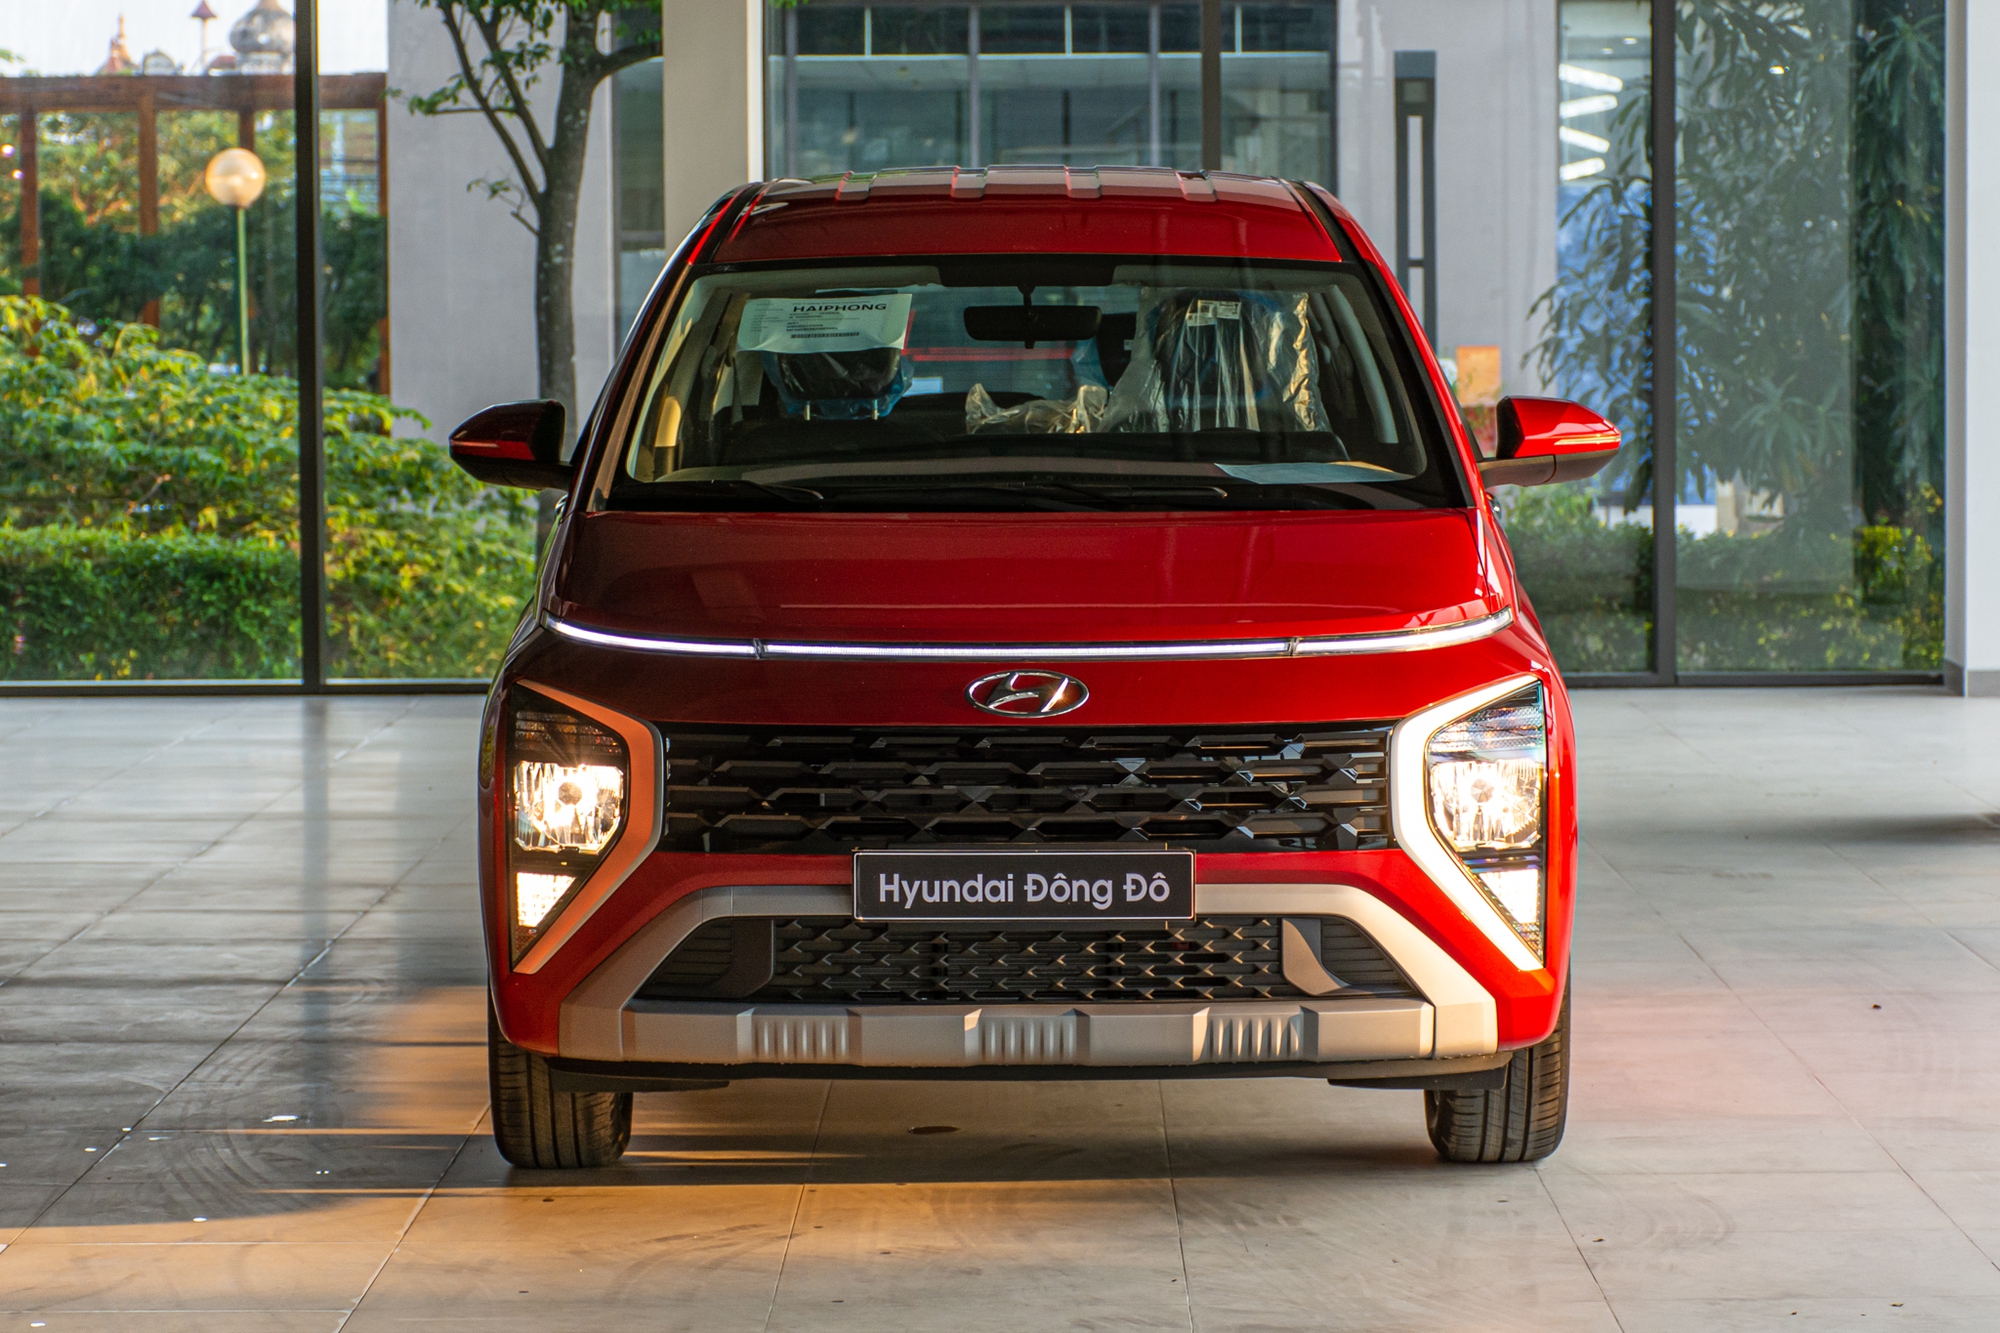 Chi tiết Hyundai Stargazer bản giữa giá 625 triệu đồng: Trang bị đủ dùng, thiếu gói an toàn chủ động - Ảnh 3.